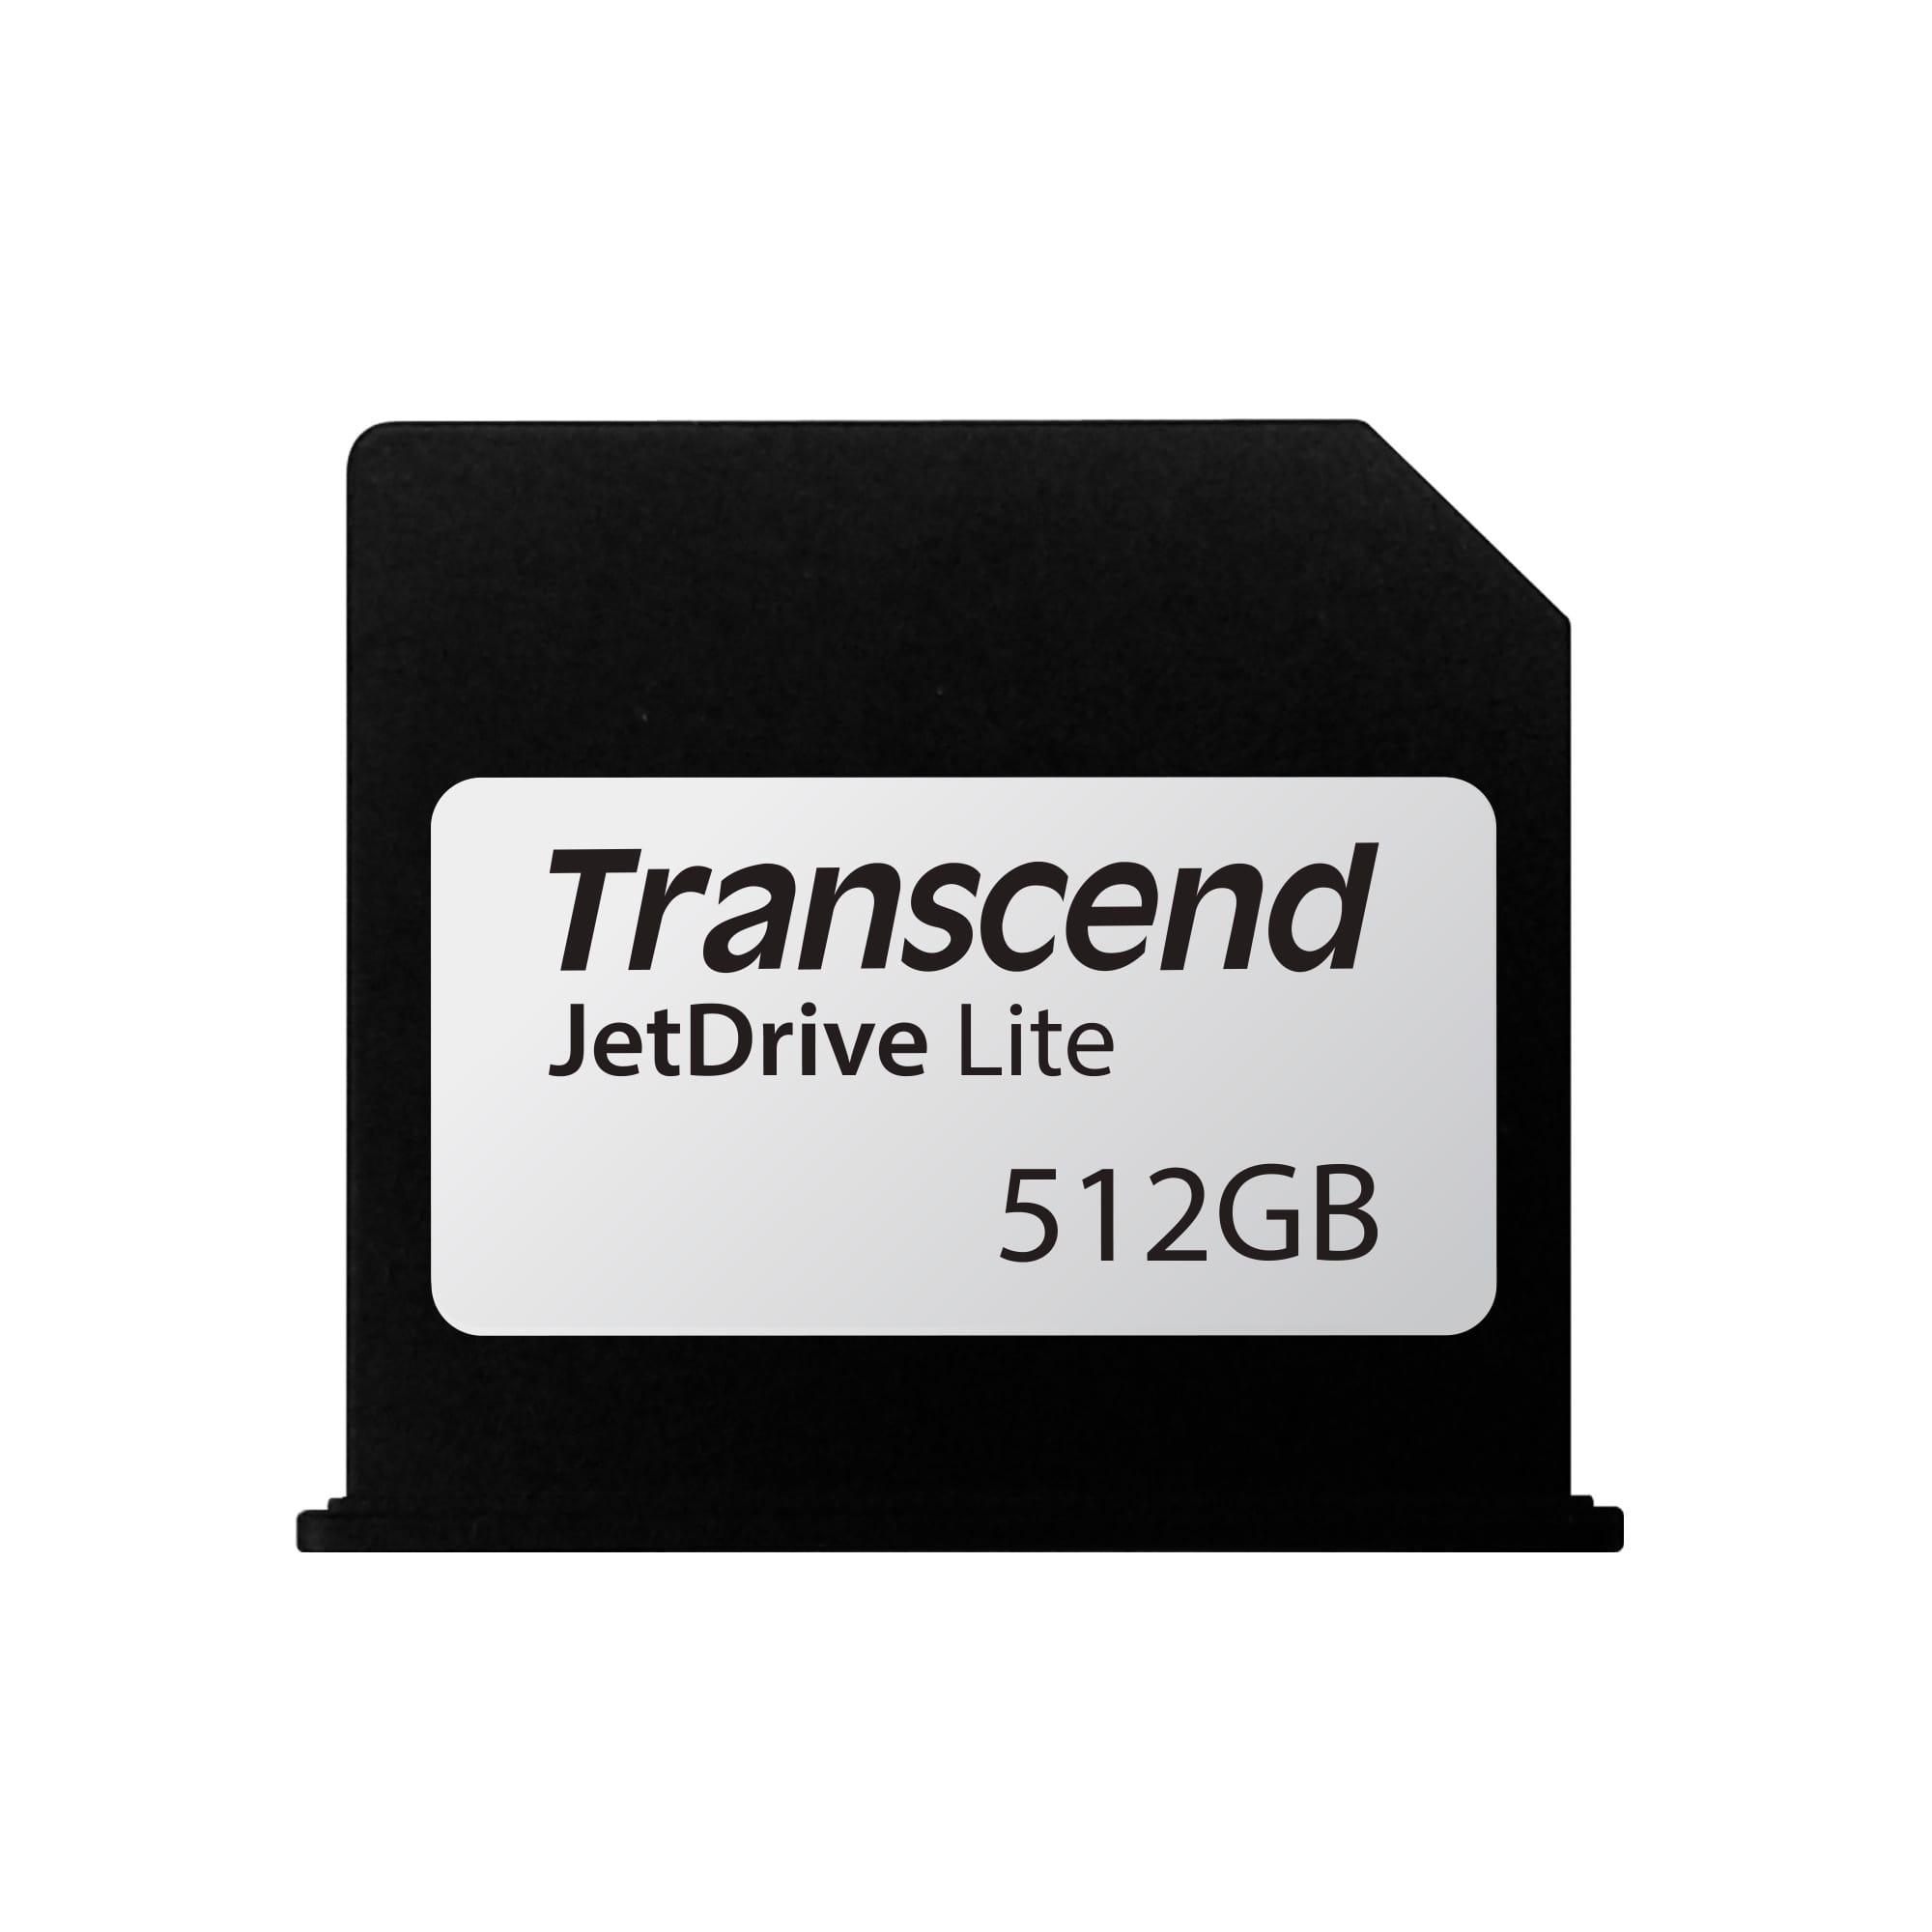 トランセンド、13インチMacBook Air用拡張ストレージカードの512GBモデルを発売